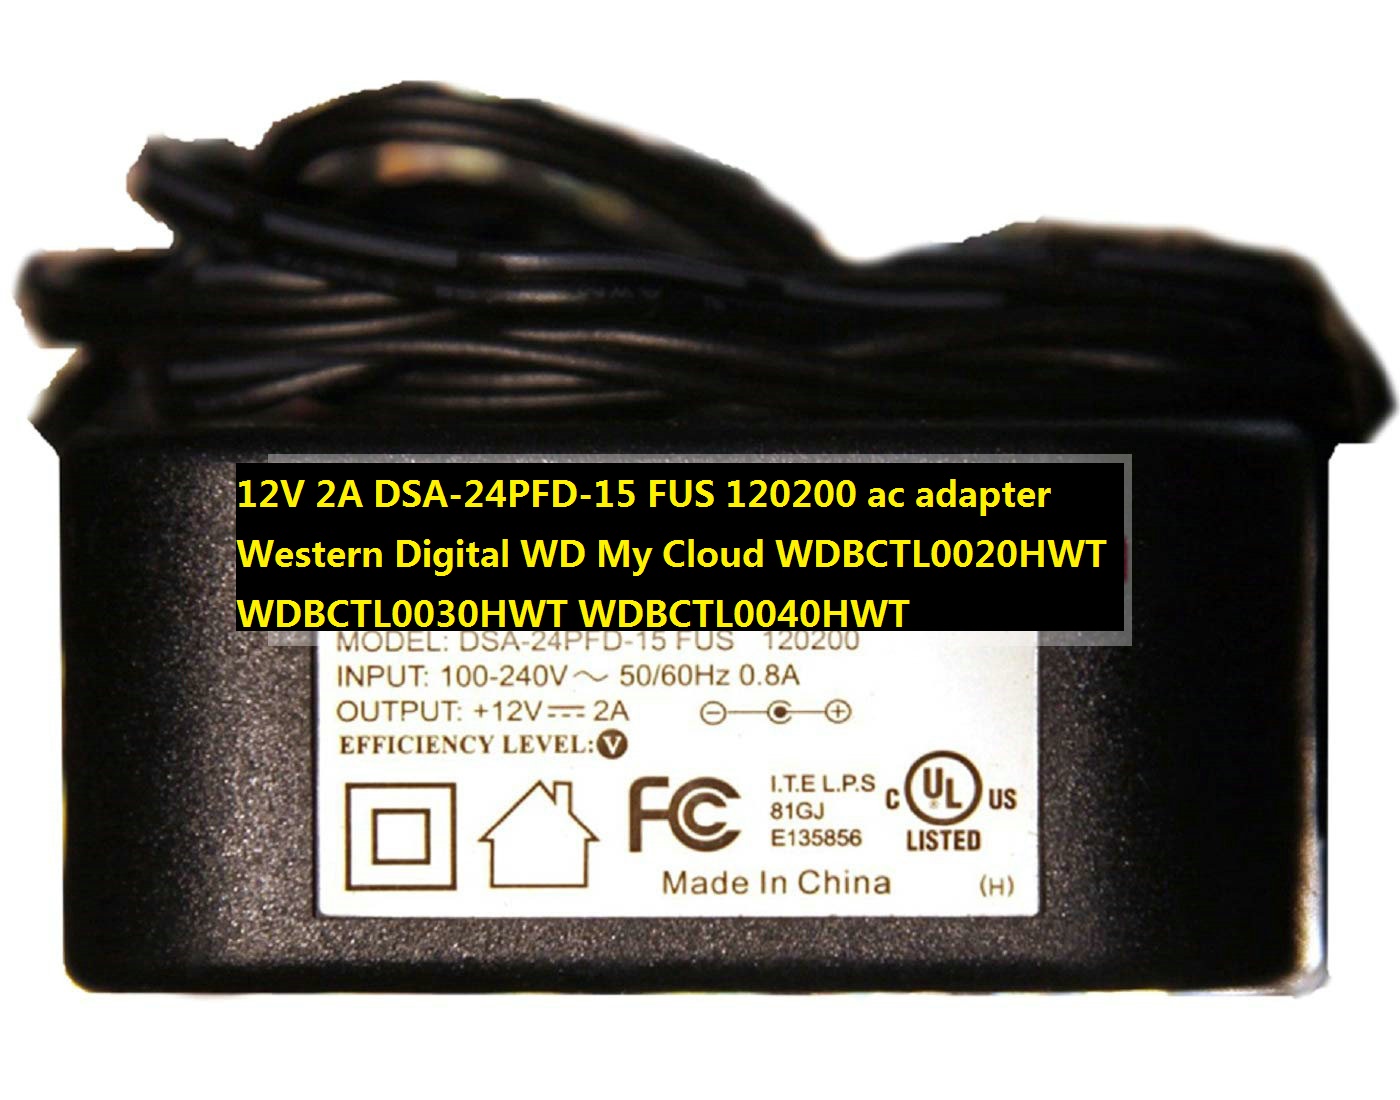 *Brand NEW* 12V 2A DSA-24PFD-15 FUS 120200 ac adapter Western Digital WD My Cloud WDBCTL0020HWT WDBCTL0030HWT